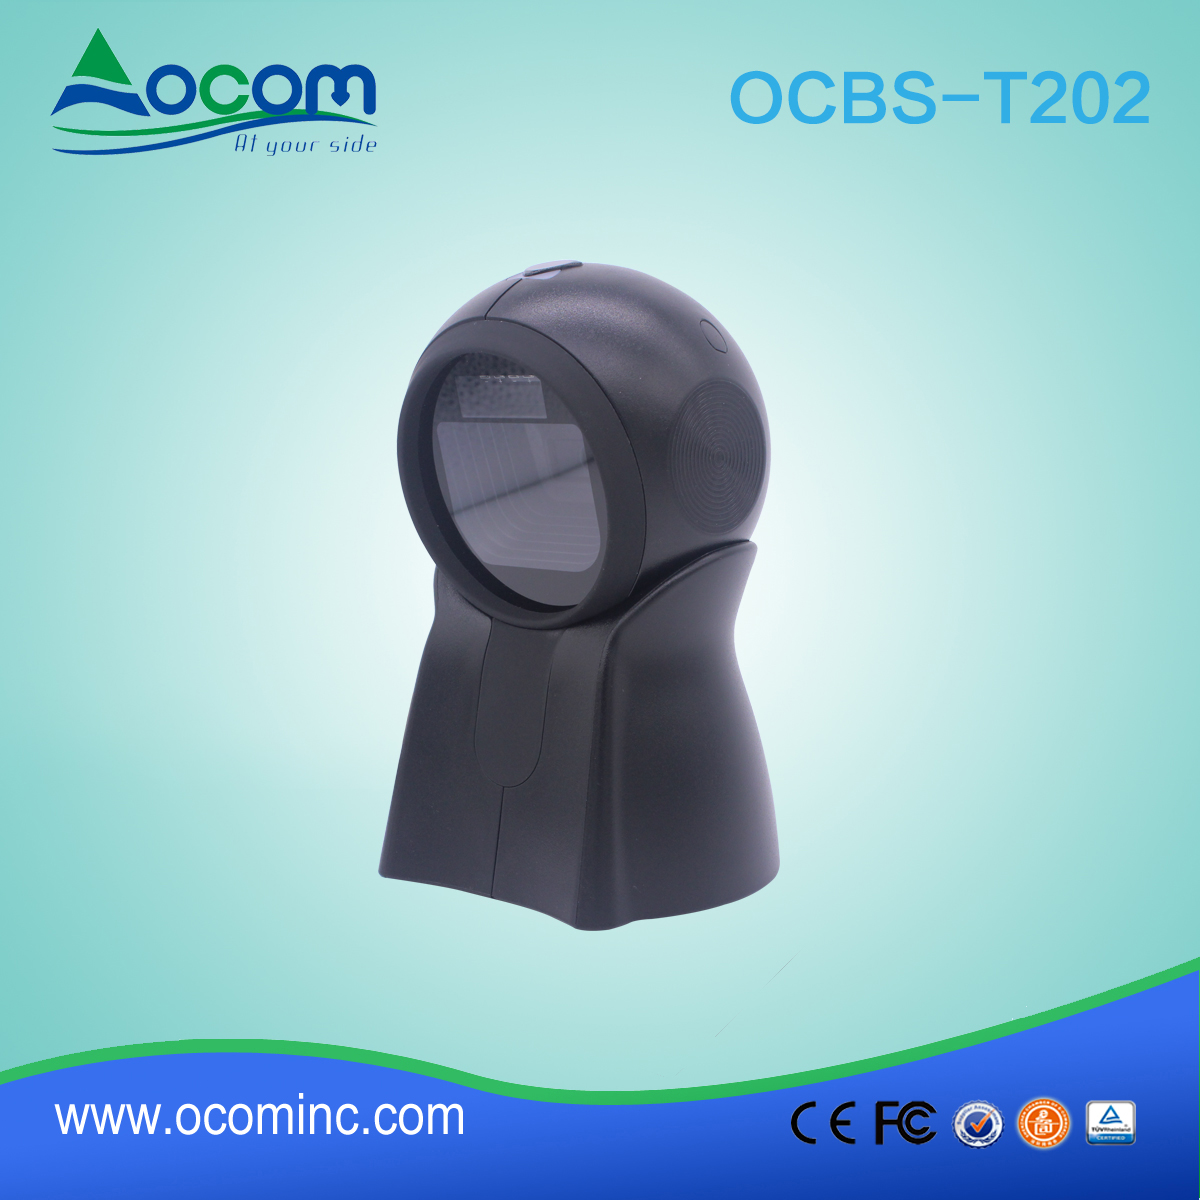 OCBS-T202: High Speed POS 2D Barcode Scanner für Supermarkt